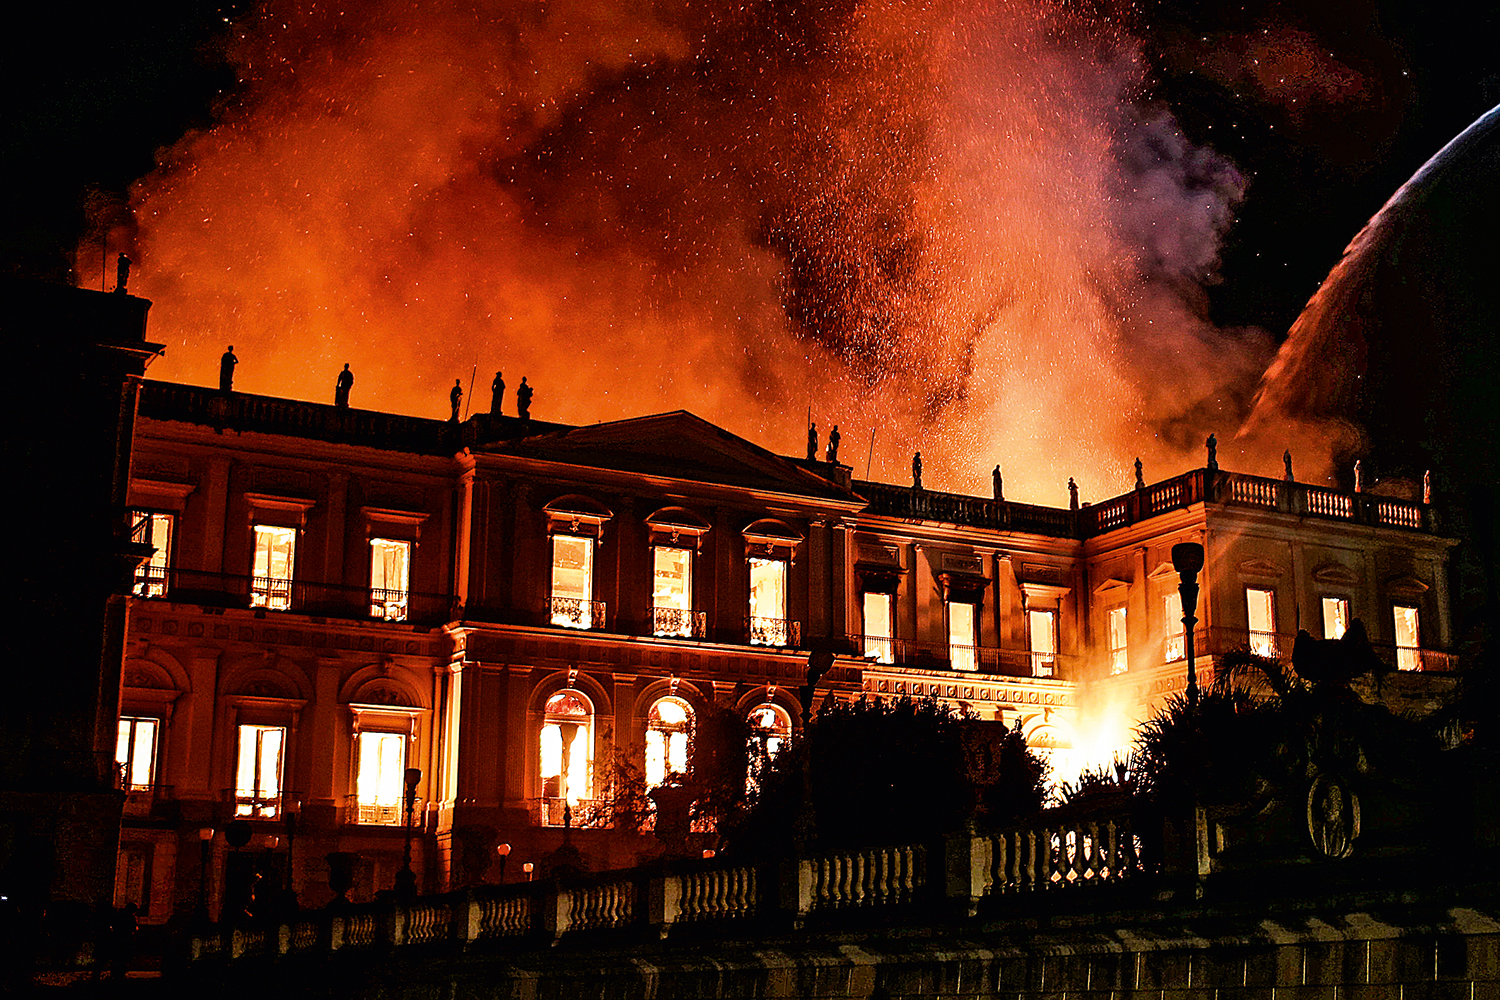 Incêndio no Museu Nacional começou no ar-condicionado, aponta laudo | VEJA